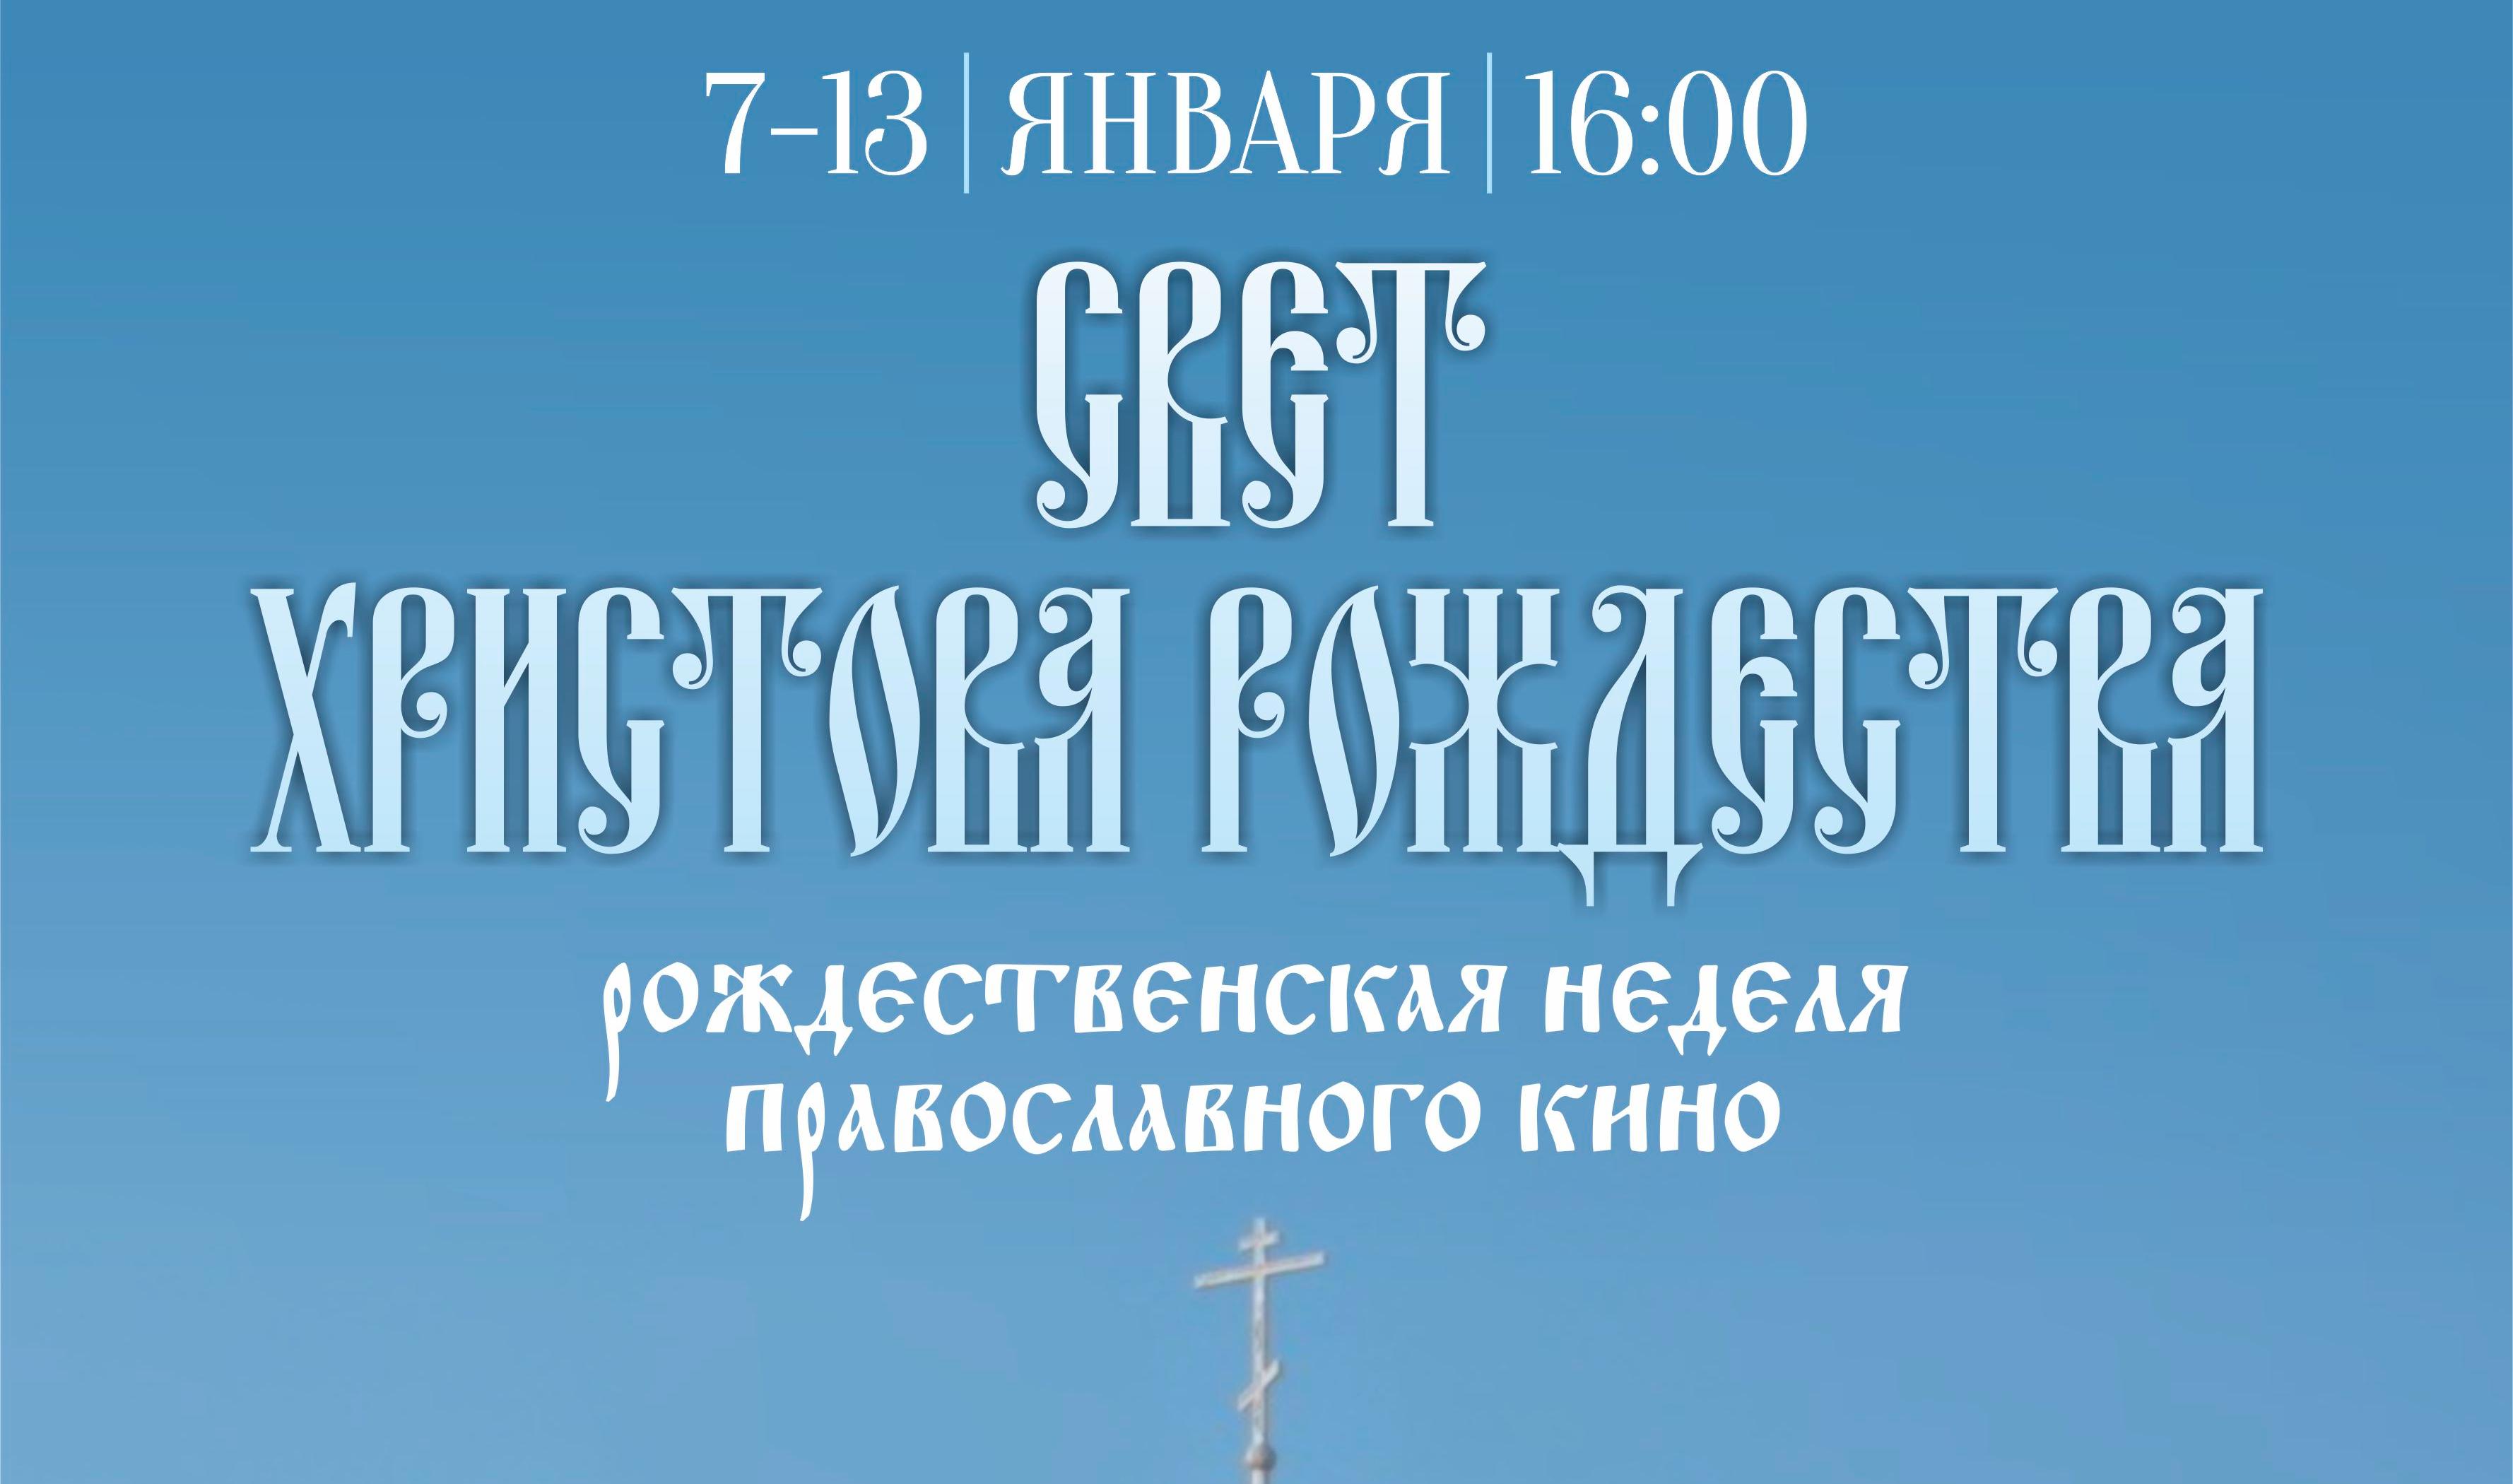 В Перми пройдет неделя православного кино